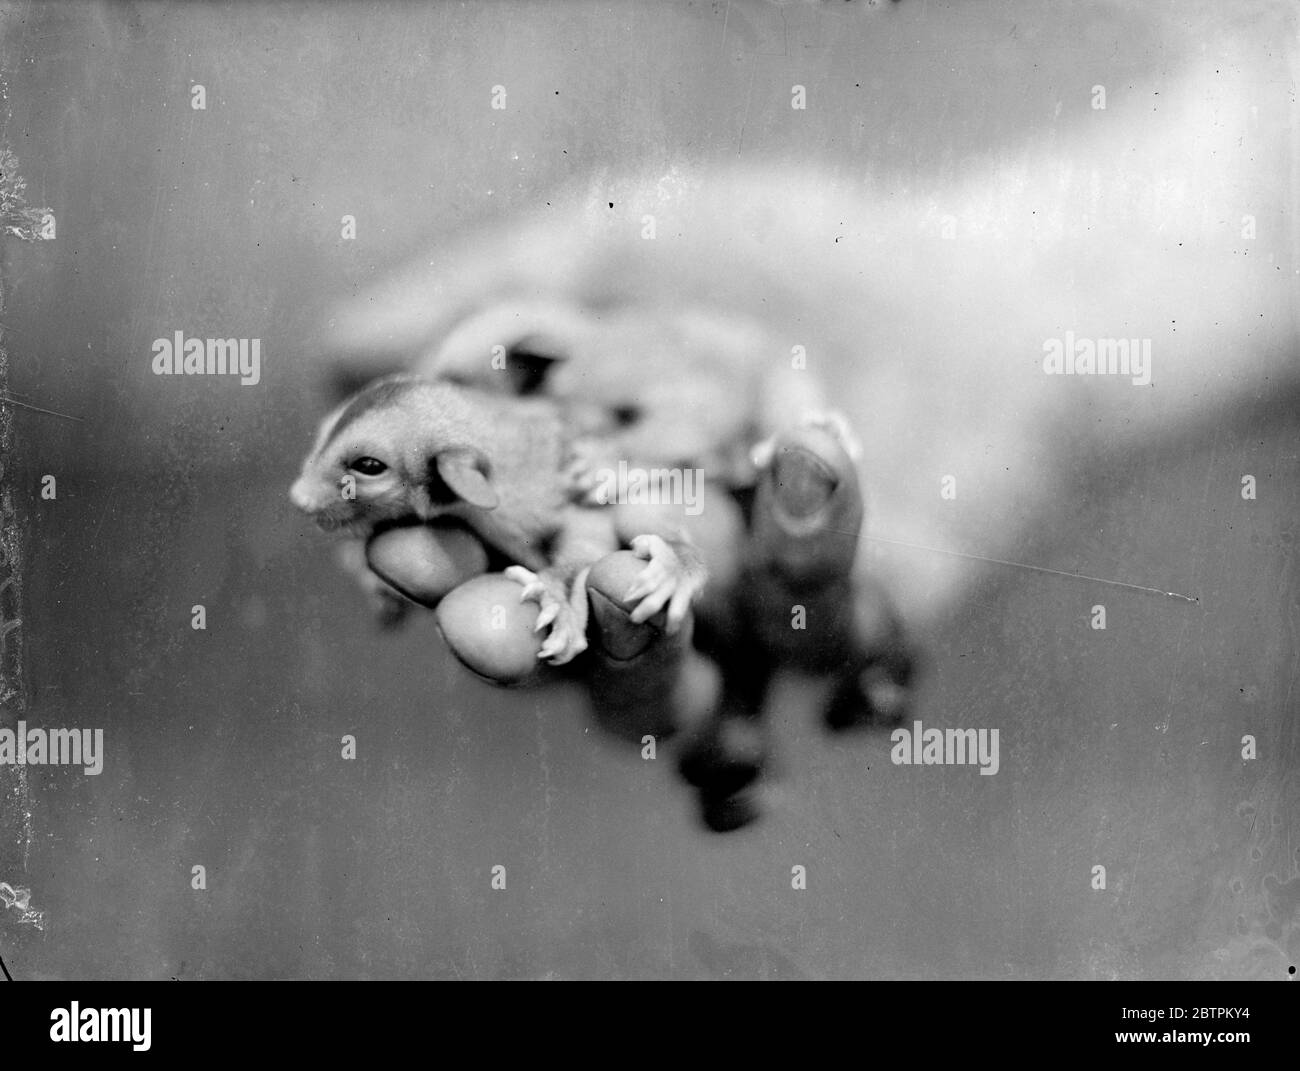 Facendo uso della madre . Baby Flying Opossum fa la loro prima apparizione allo Zoo di Londra . Due piccoli fasci di furry grigio chiaro con grandi occhi scuri posti in una piccola faccia appuntita hanno appena fatto la loro apparizione alla ' casa dei roditori' dello Zoo di Londra. Sono Opossum volanti , che, quando sono cresciuti completamente, saranno circa tre quarti delle dimensioni del comune scoiattolo grigio . Nati solo poche settimane fa , i bambini si sono appena mostrati in pubblico . L'opossum volante , che porta il suo giovane in una custodia come un canguro, può scivolare da albero a albero usando una membrana tra i loro arti posteriori e anteriori . Foto Sho Foto Stock